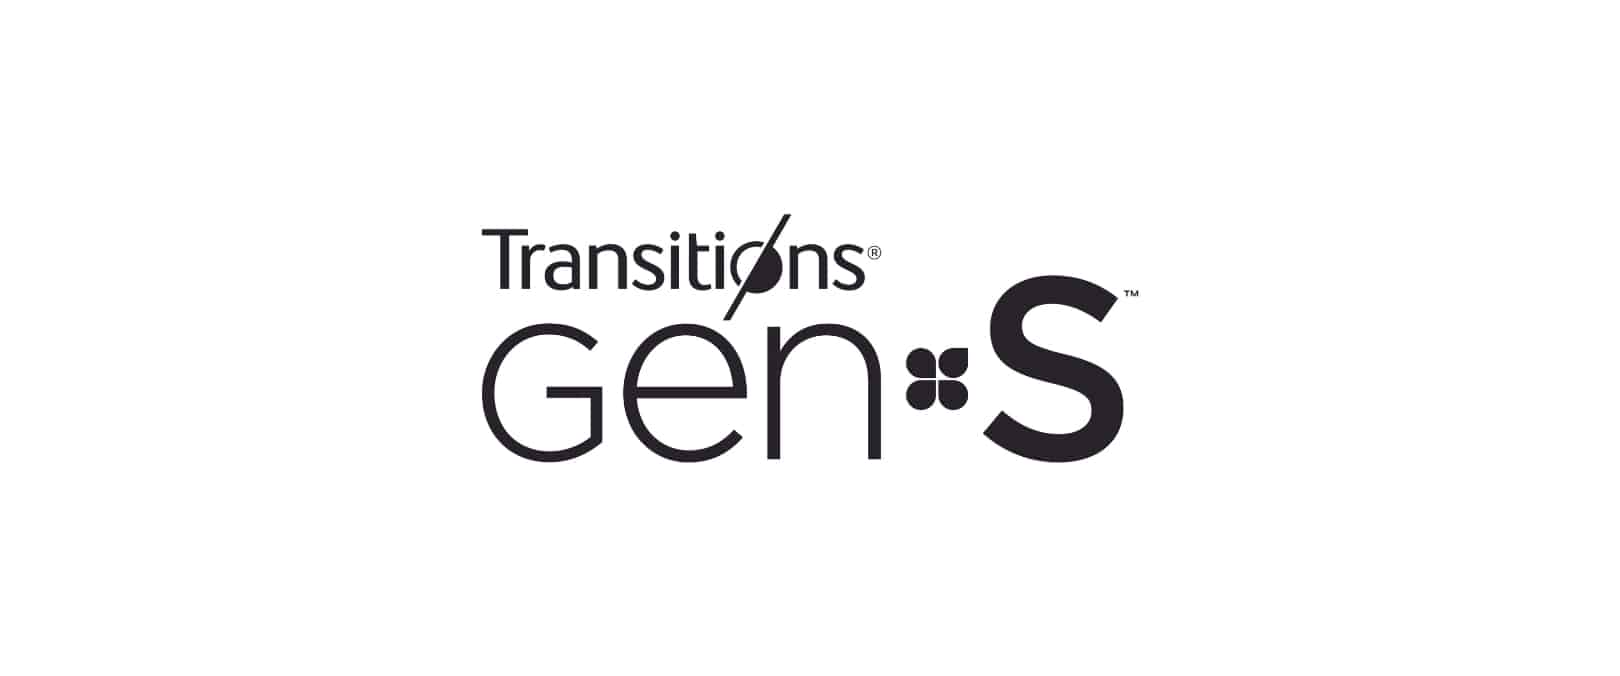 Transitions GEN S